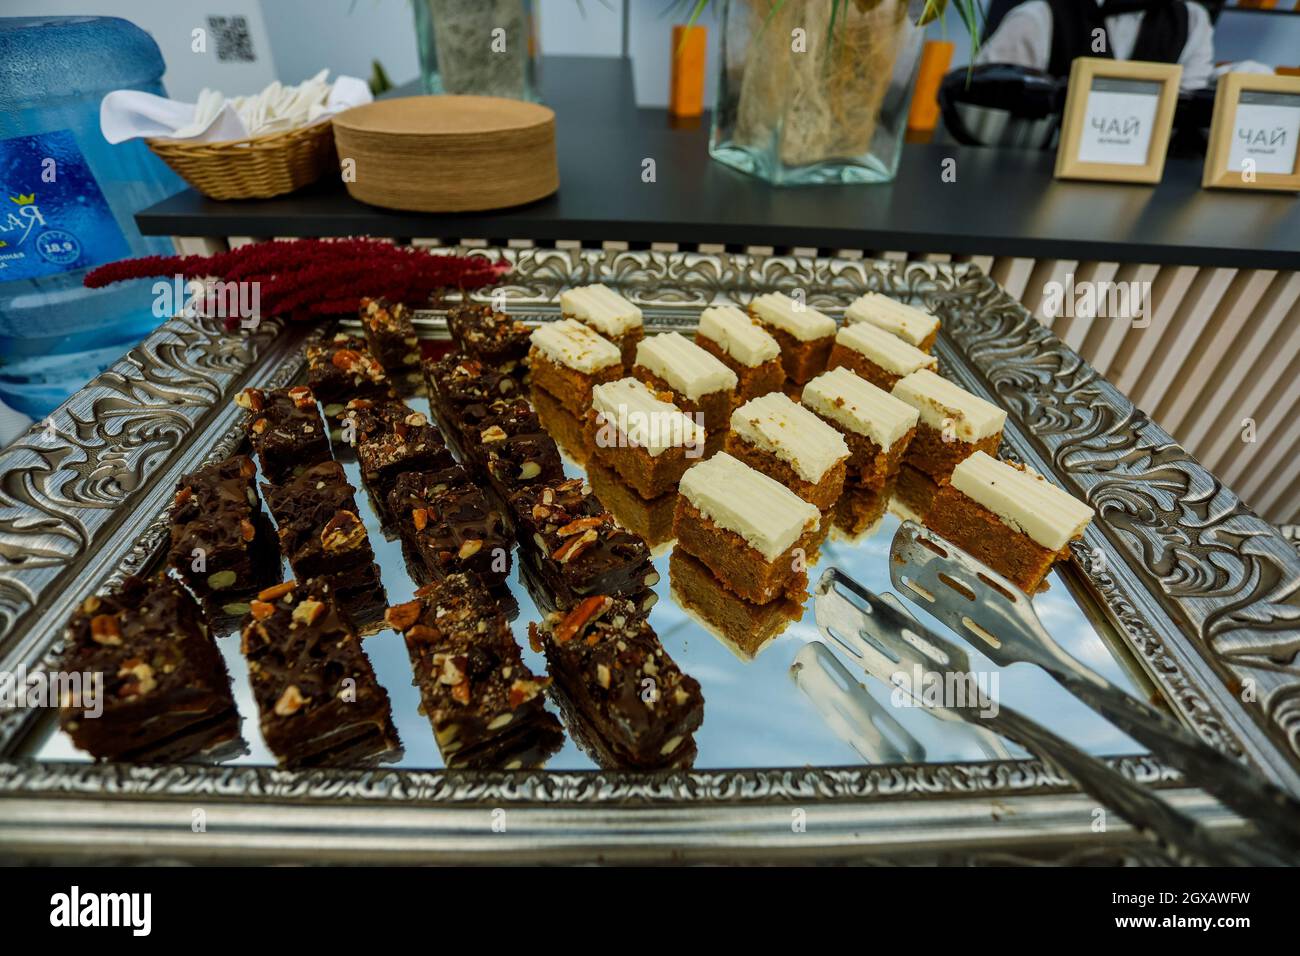 Fette biscottate con noci, cacao e caramello al tavolo del buffet, servite sul vassoio d'argento Foto Stock